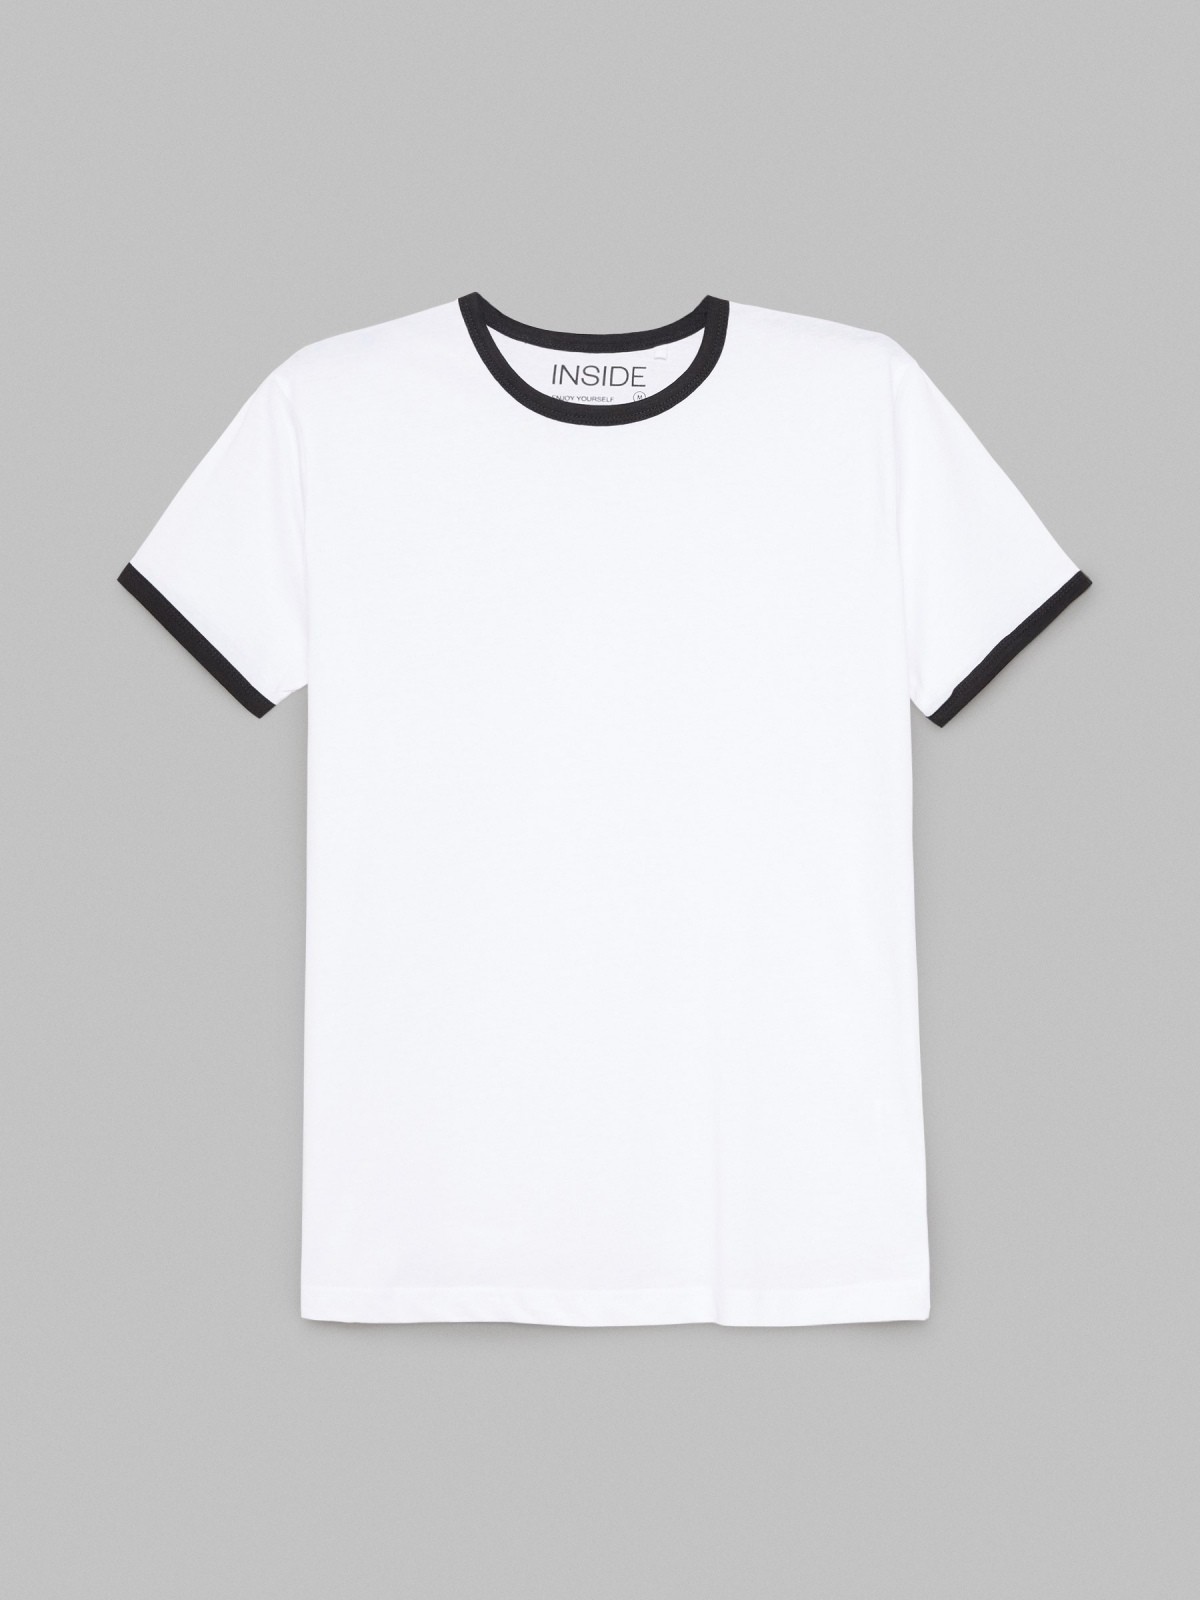  T-shirt básica com contrastes branco